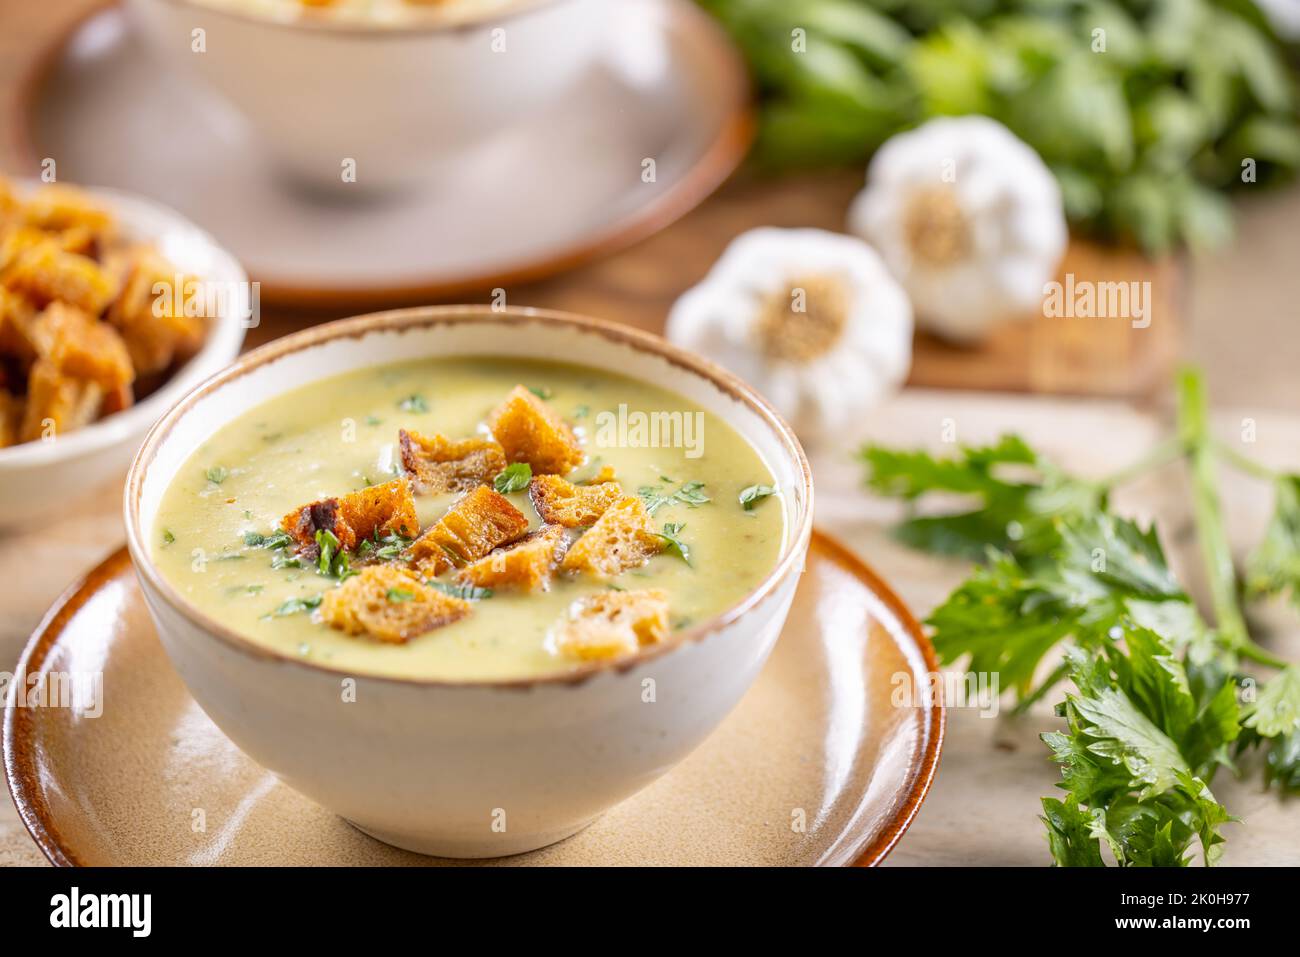 Zuppa all'aglio con crostini di pane e condita con foglie di sedano in coppe. Foto Stock